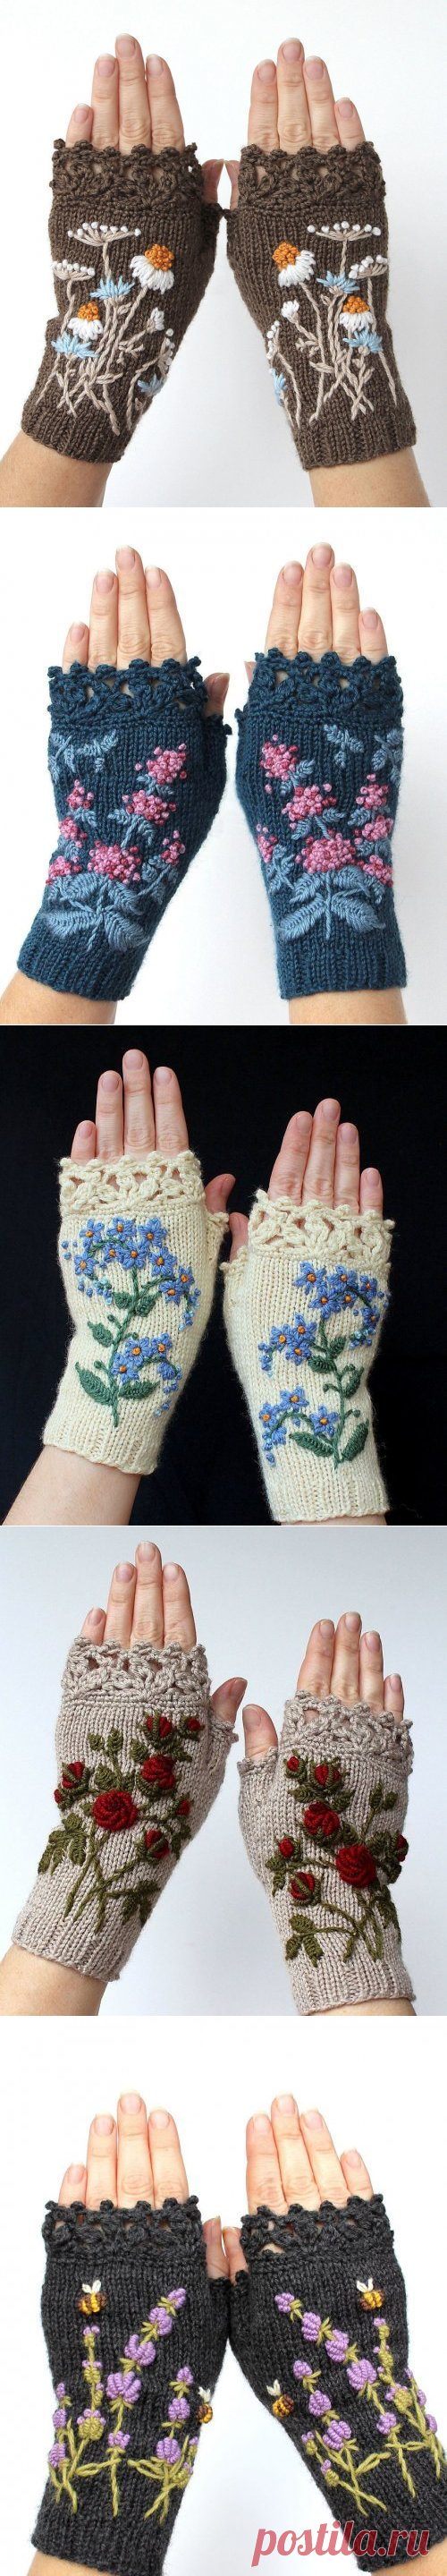 Необычные рукавицы с вышивкой по трикотажу от Наталии Бранцевичене